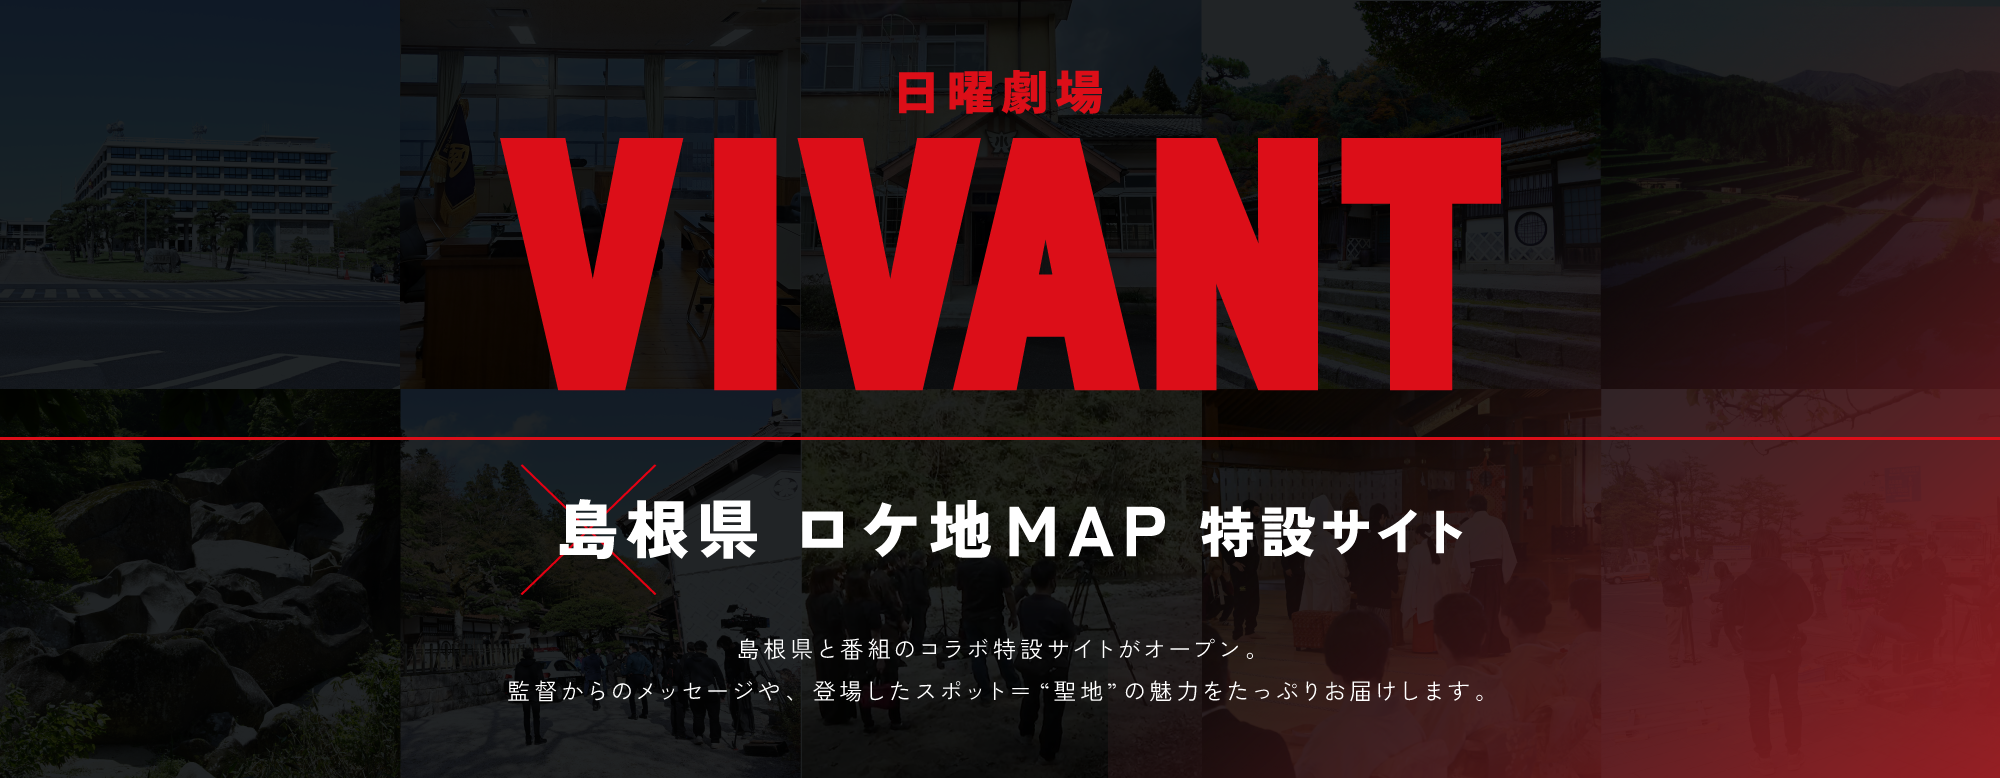 
日曜劇場 VIVANT × 島根県ロケ地 MAP 特設サイト